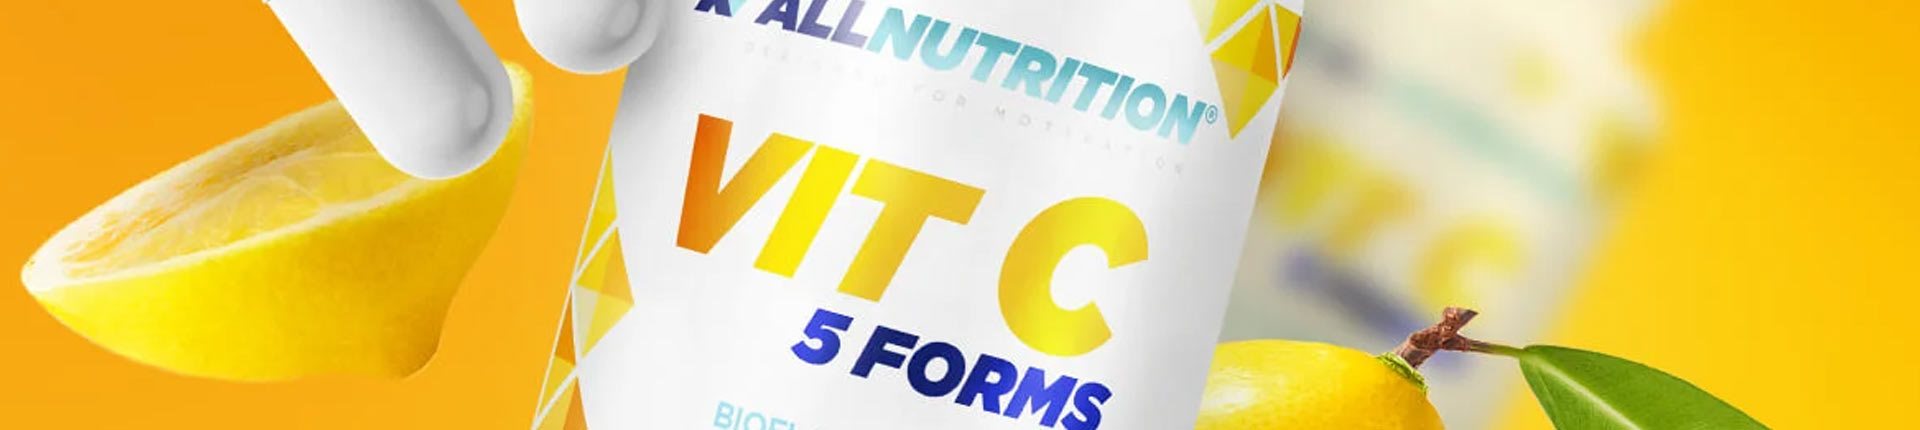 VIT C 5 FORMS - kompozycja 5 form Witaminy C